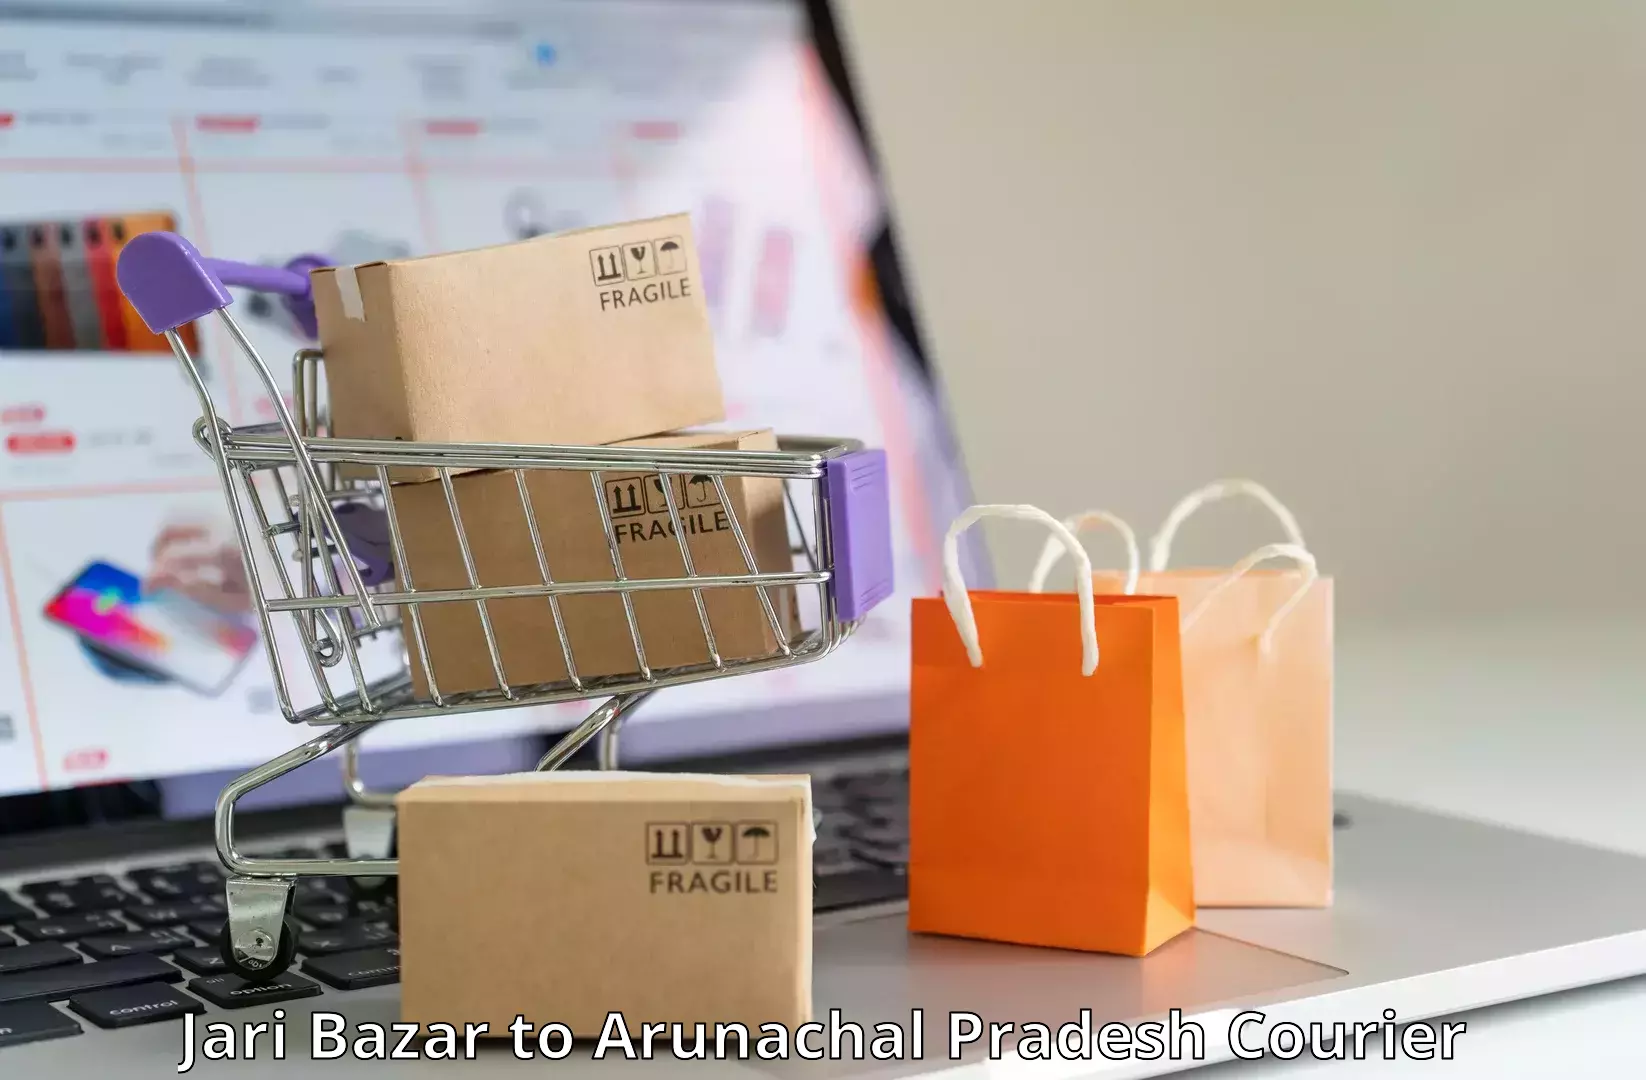 High-capacity parcel service Jari Bazar to Arunachal Pradesh